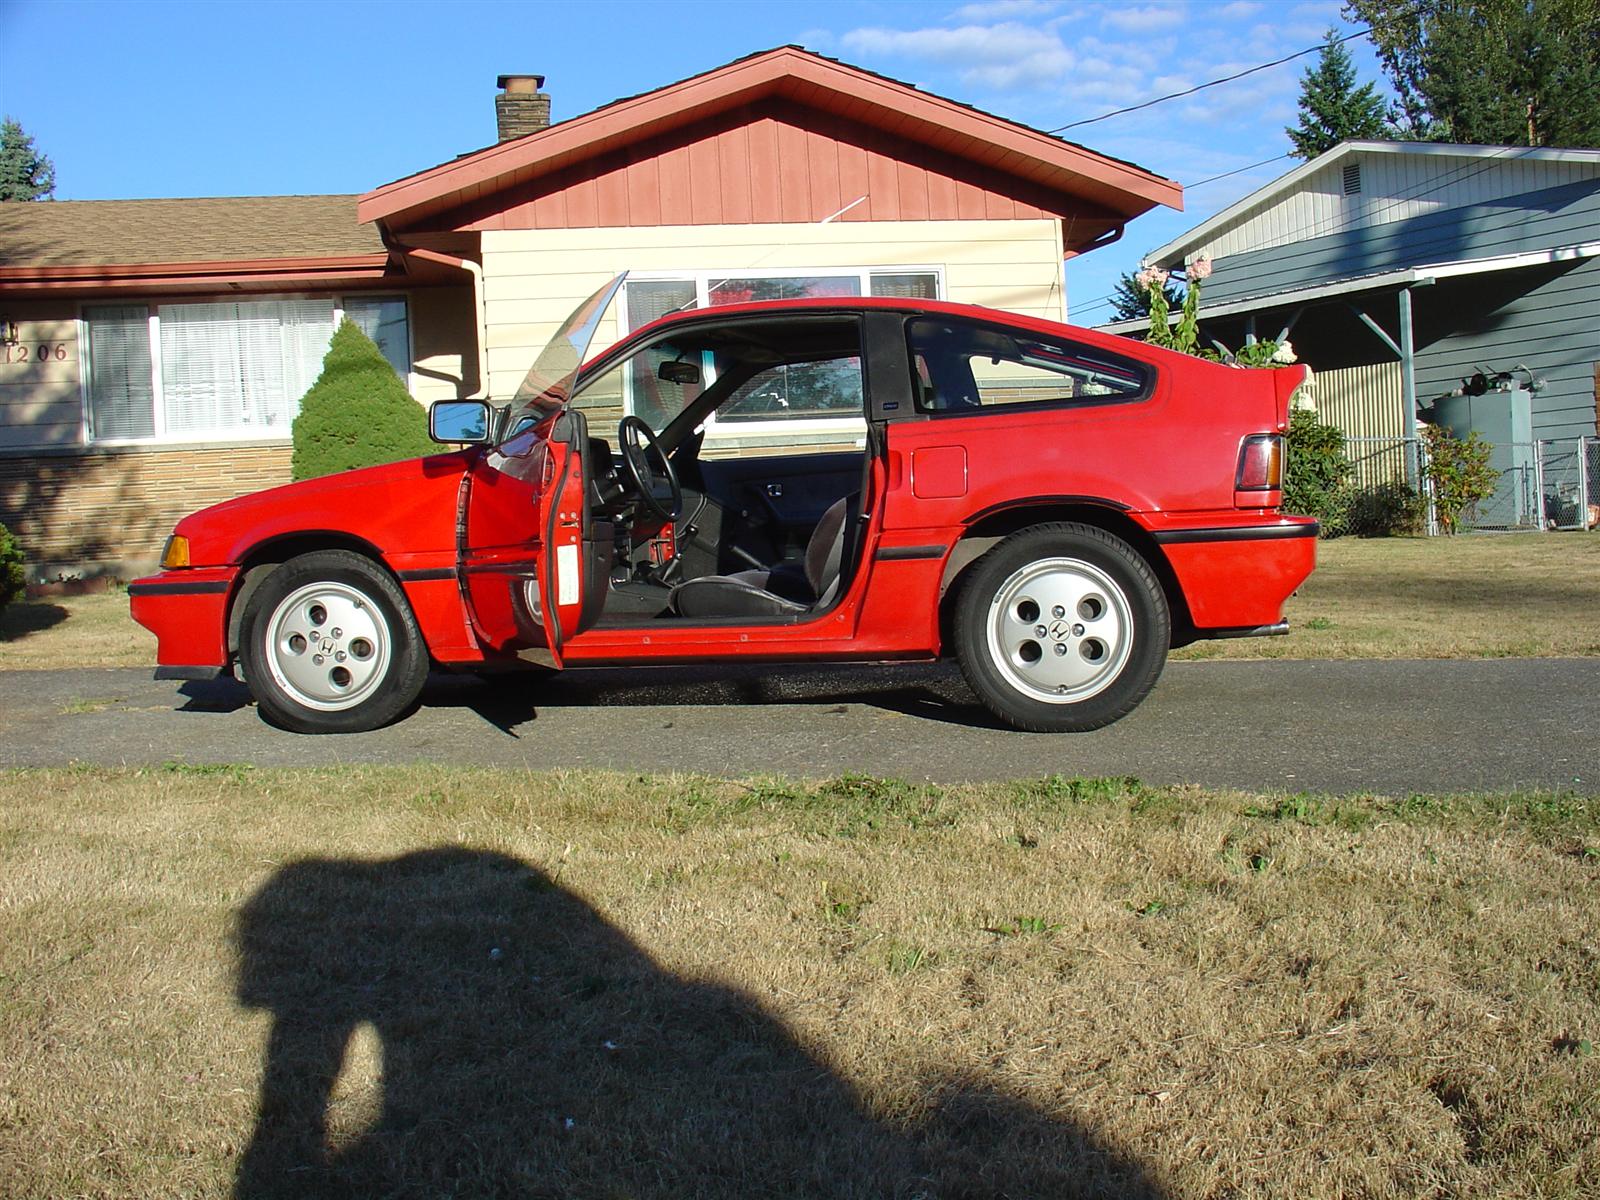 1987 Honda civic crx si specs